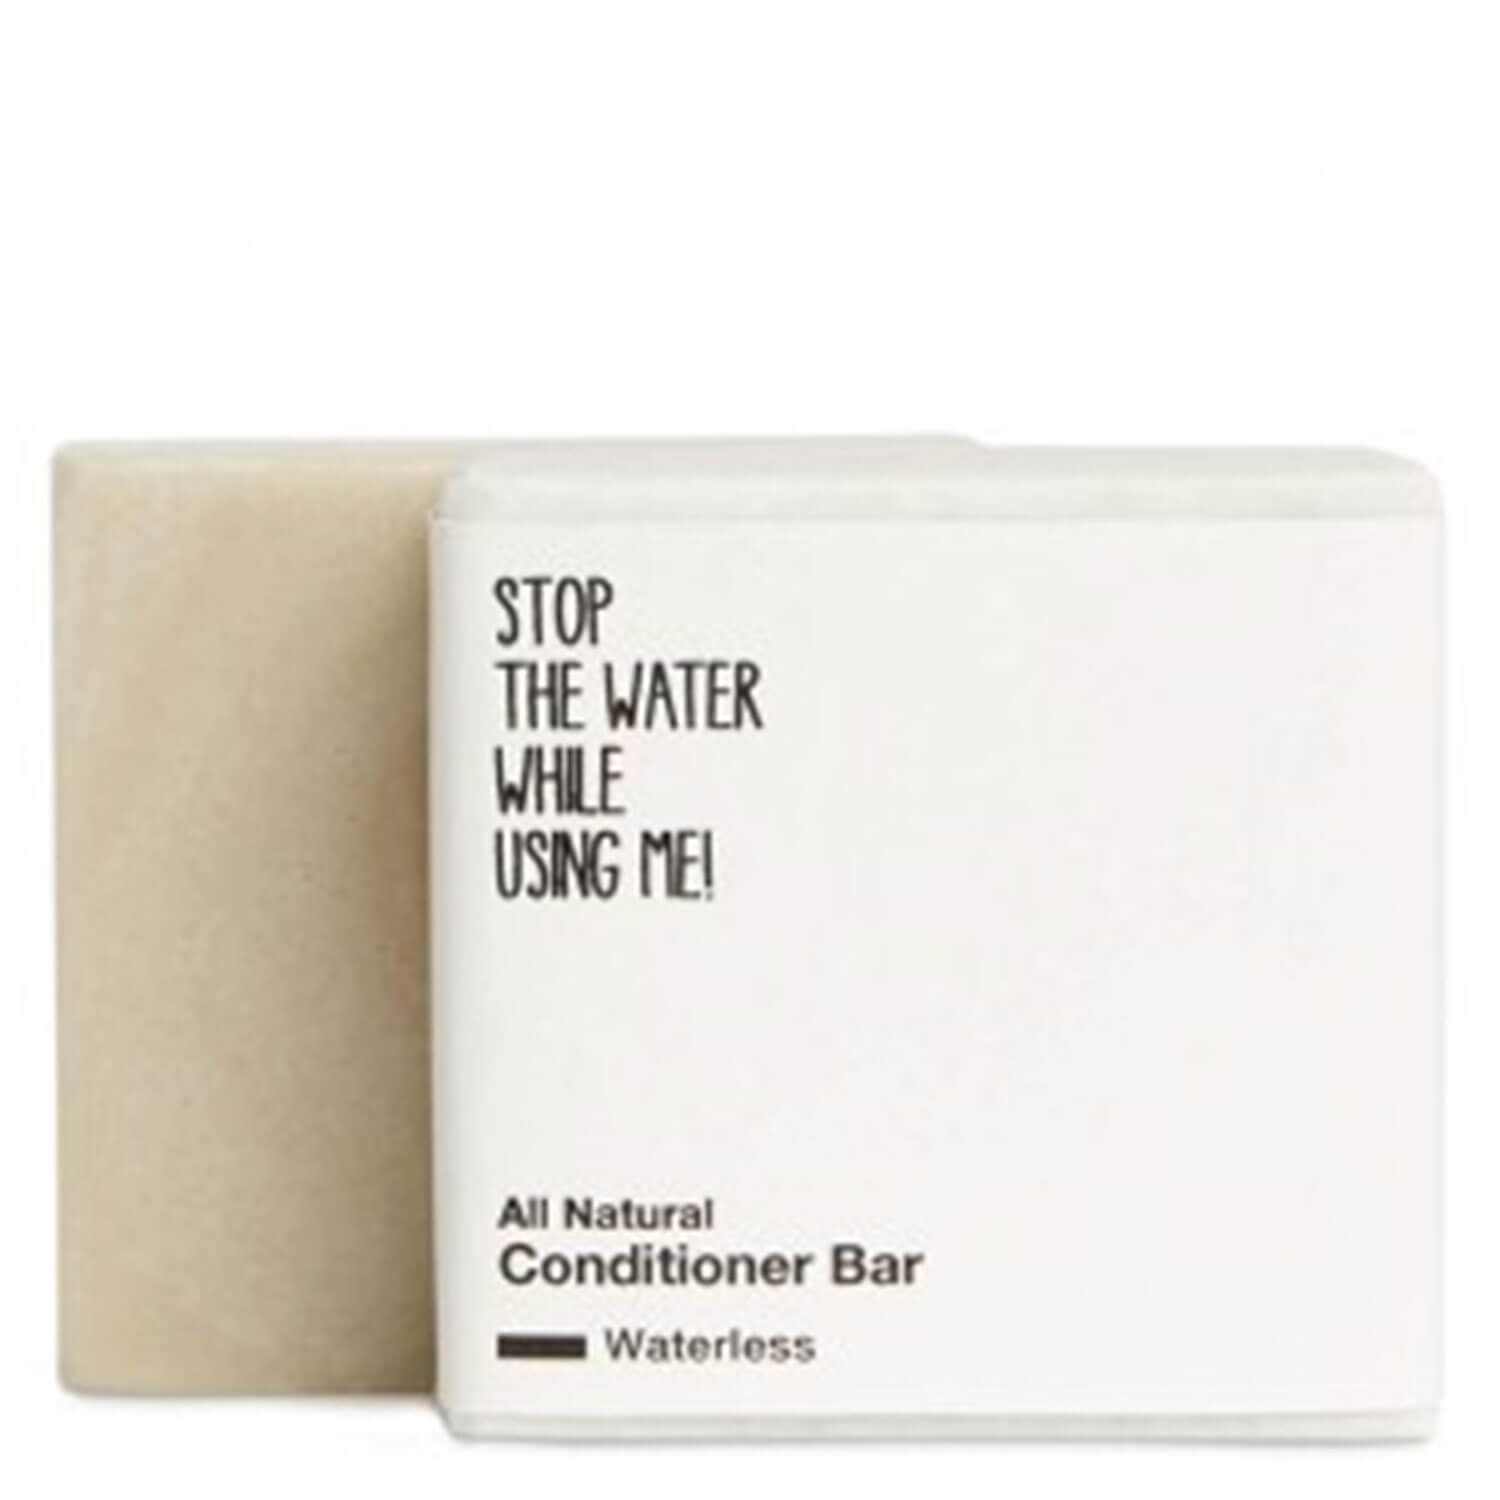 Produktbild von All Natural Hair - Waterless Conditioner Bar